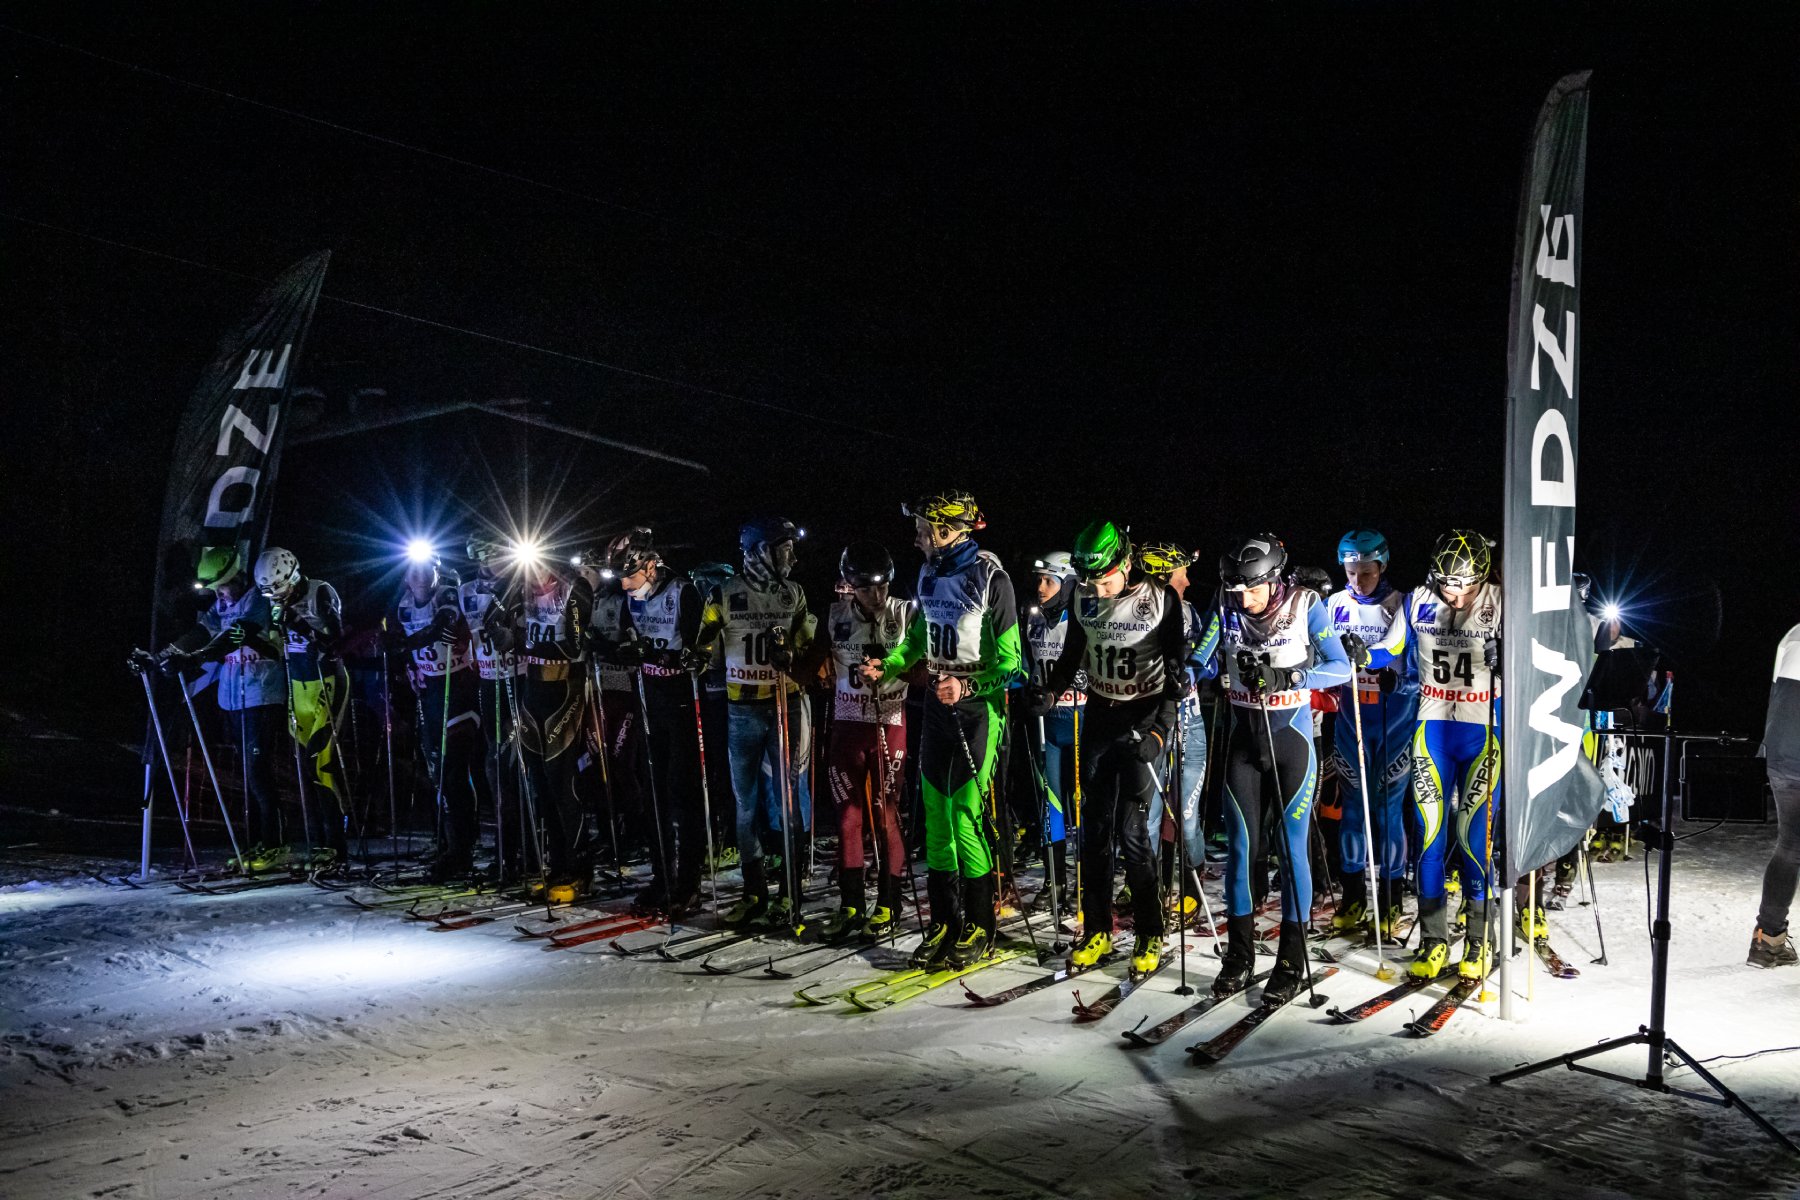 línea de salida desgarradora: esquiadores alineados por la noche, iluminación de faros